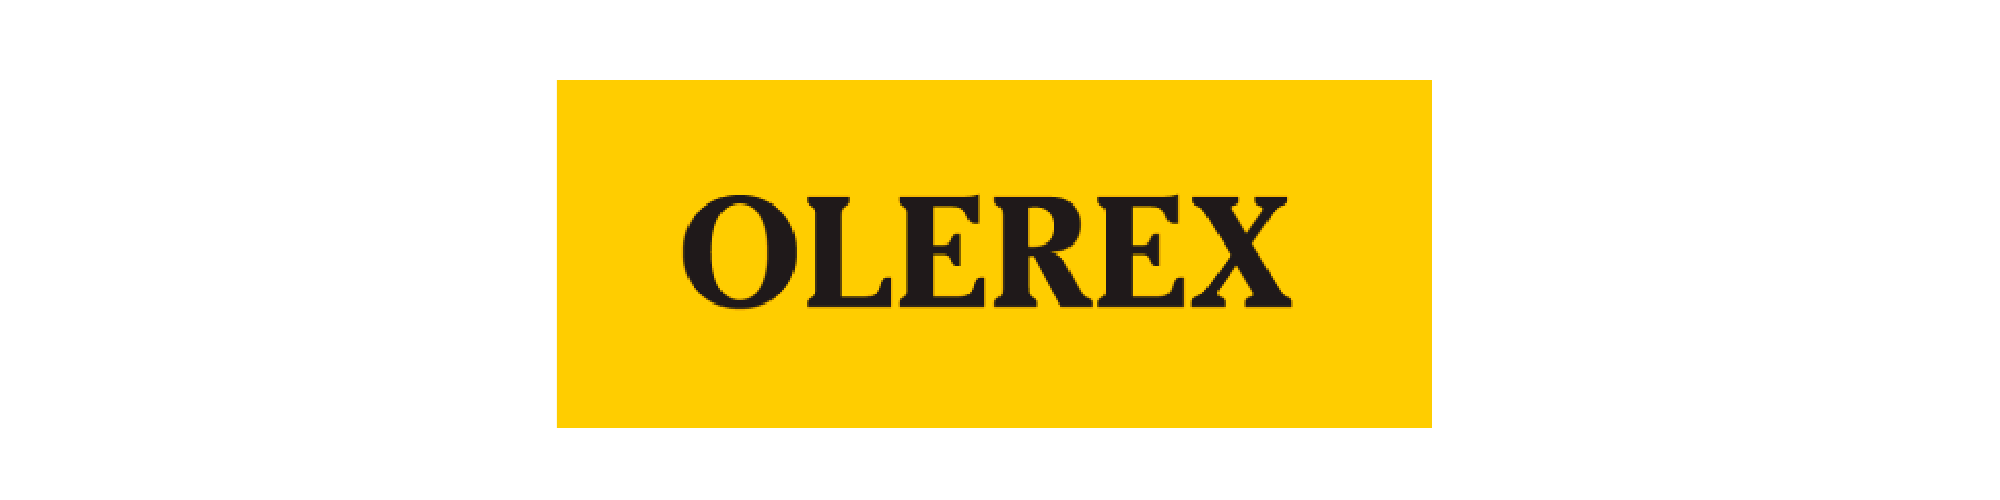 logo_olerex.png